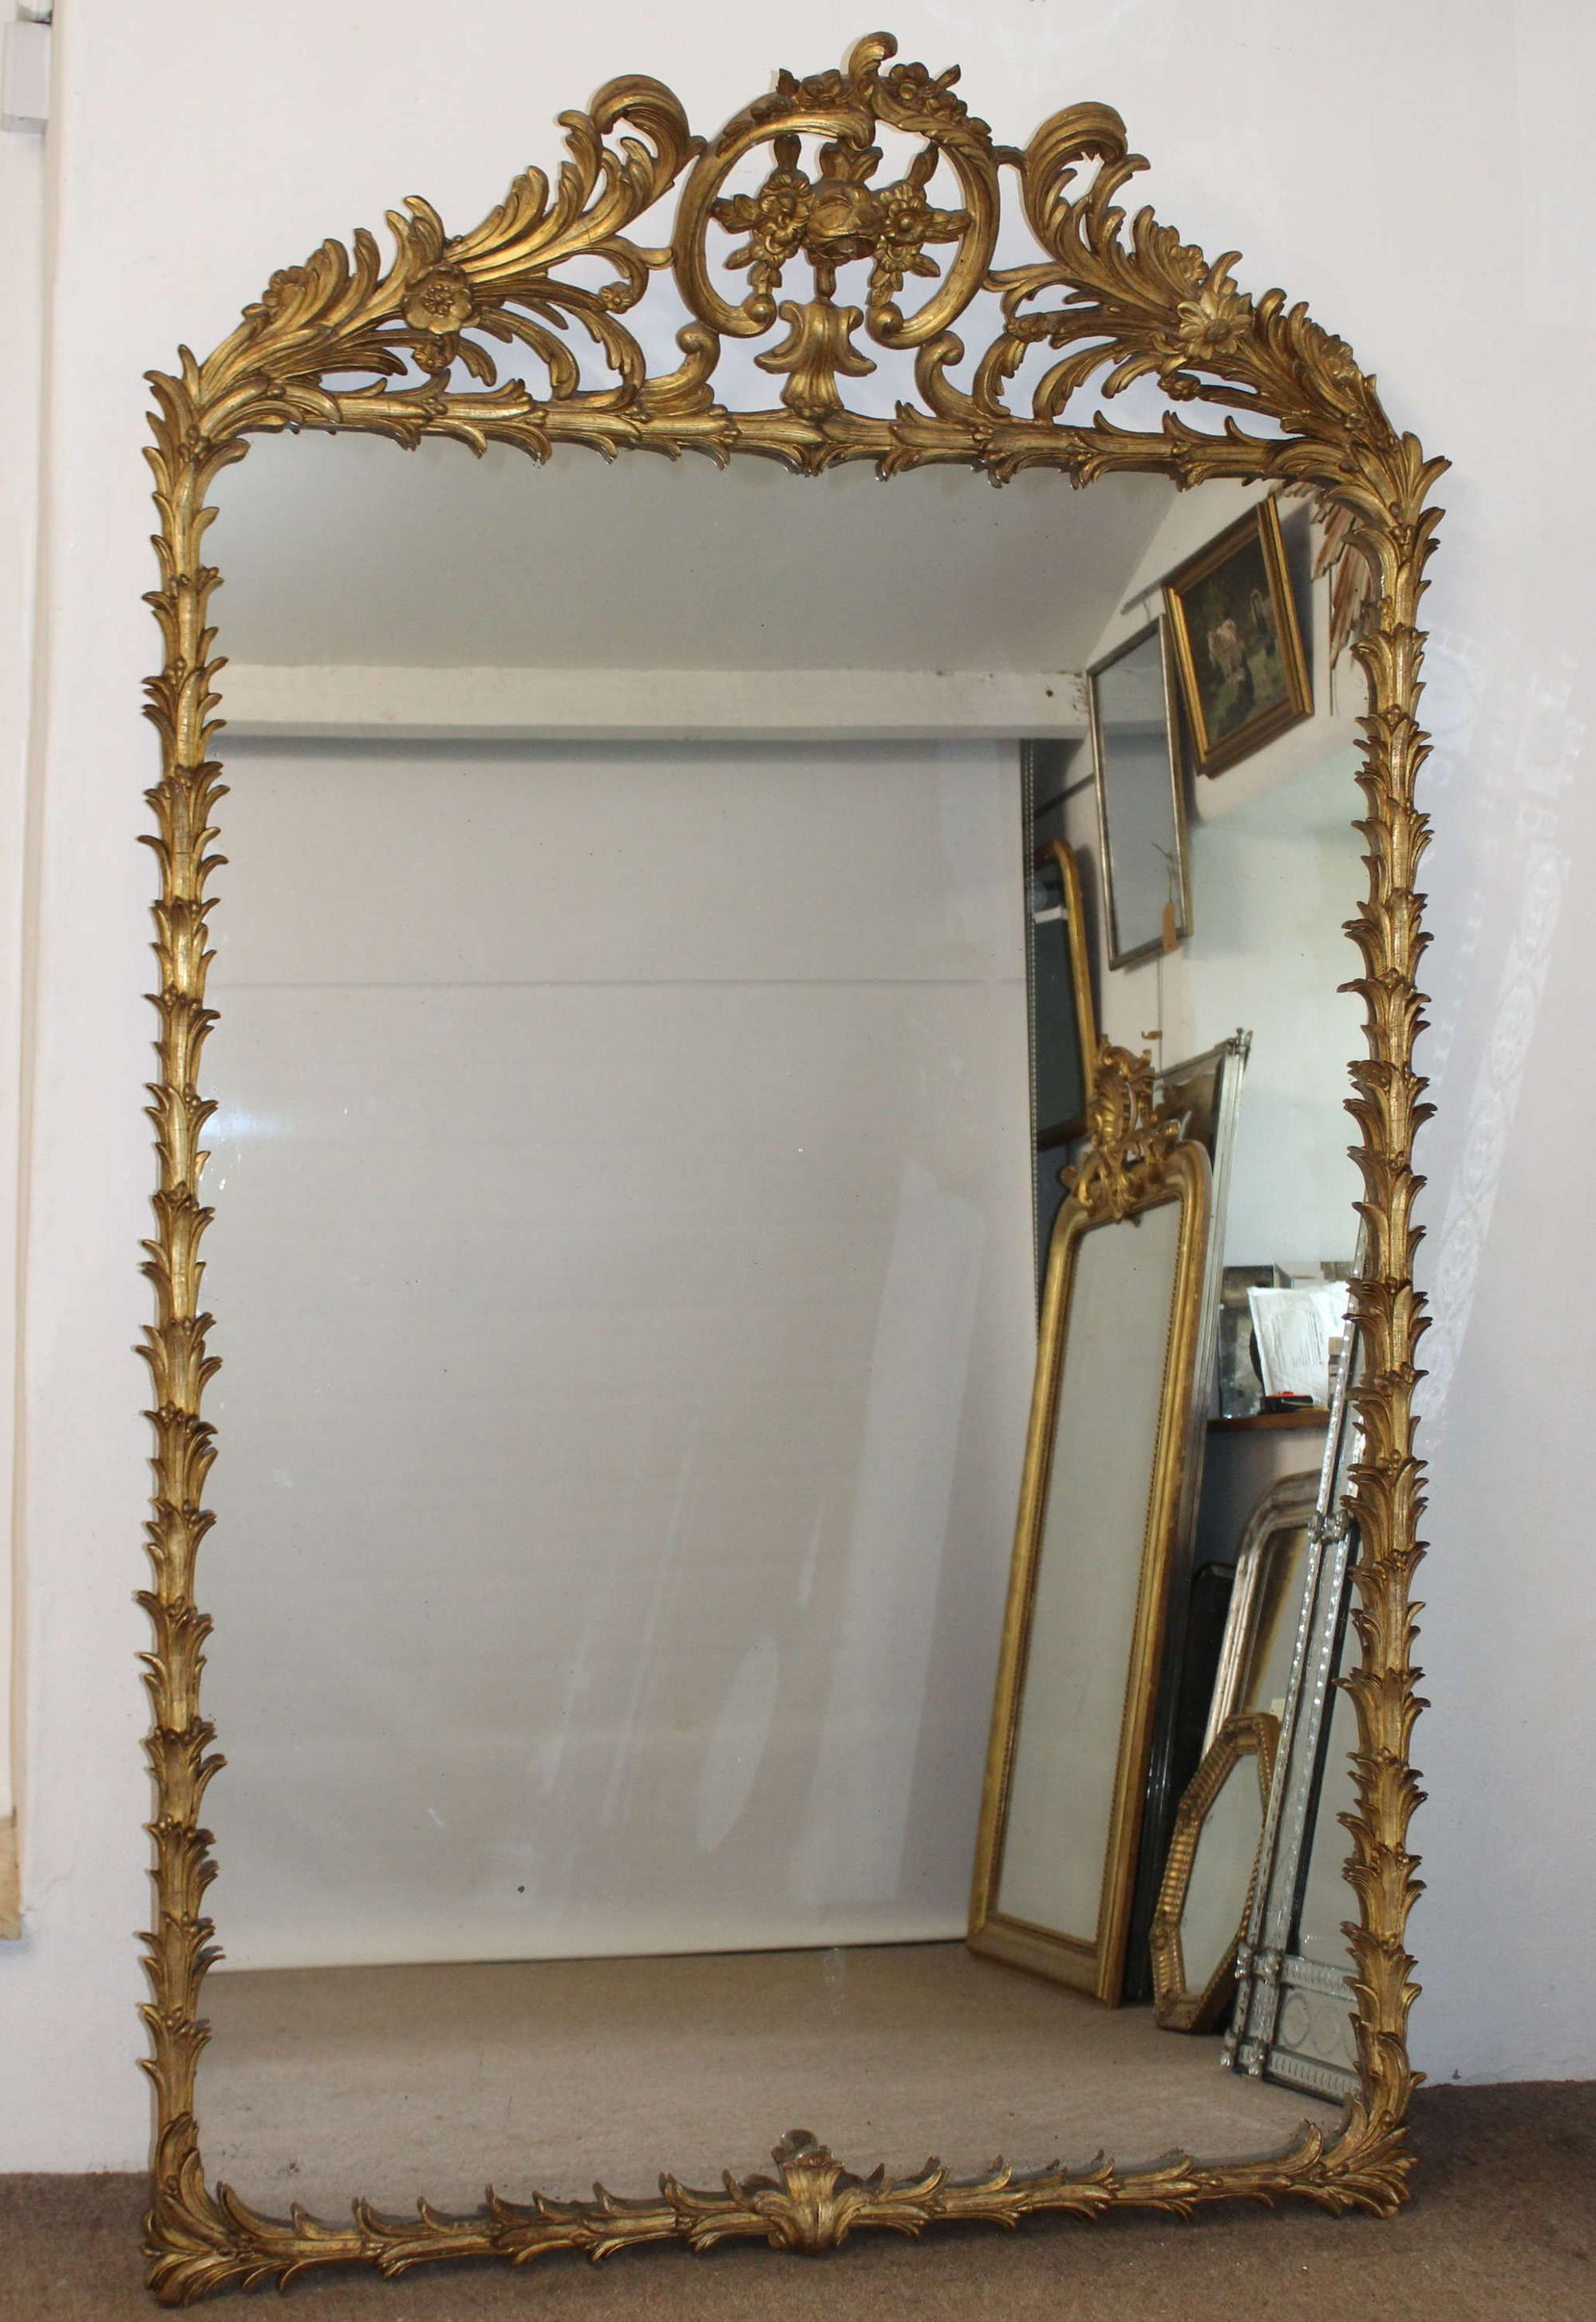 Large, decorative, antique palm leaf framed mirror